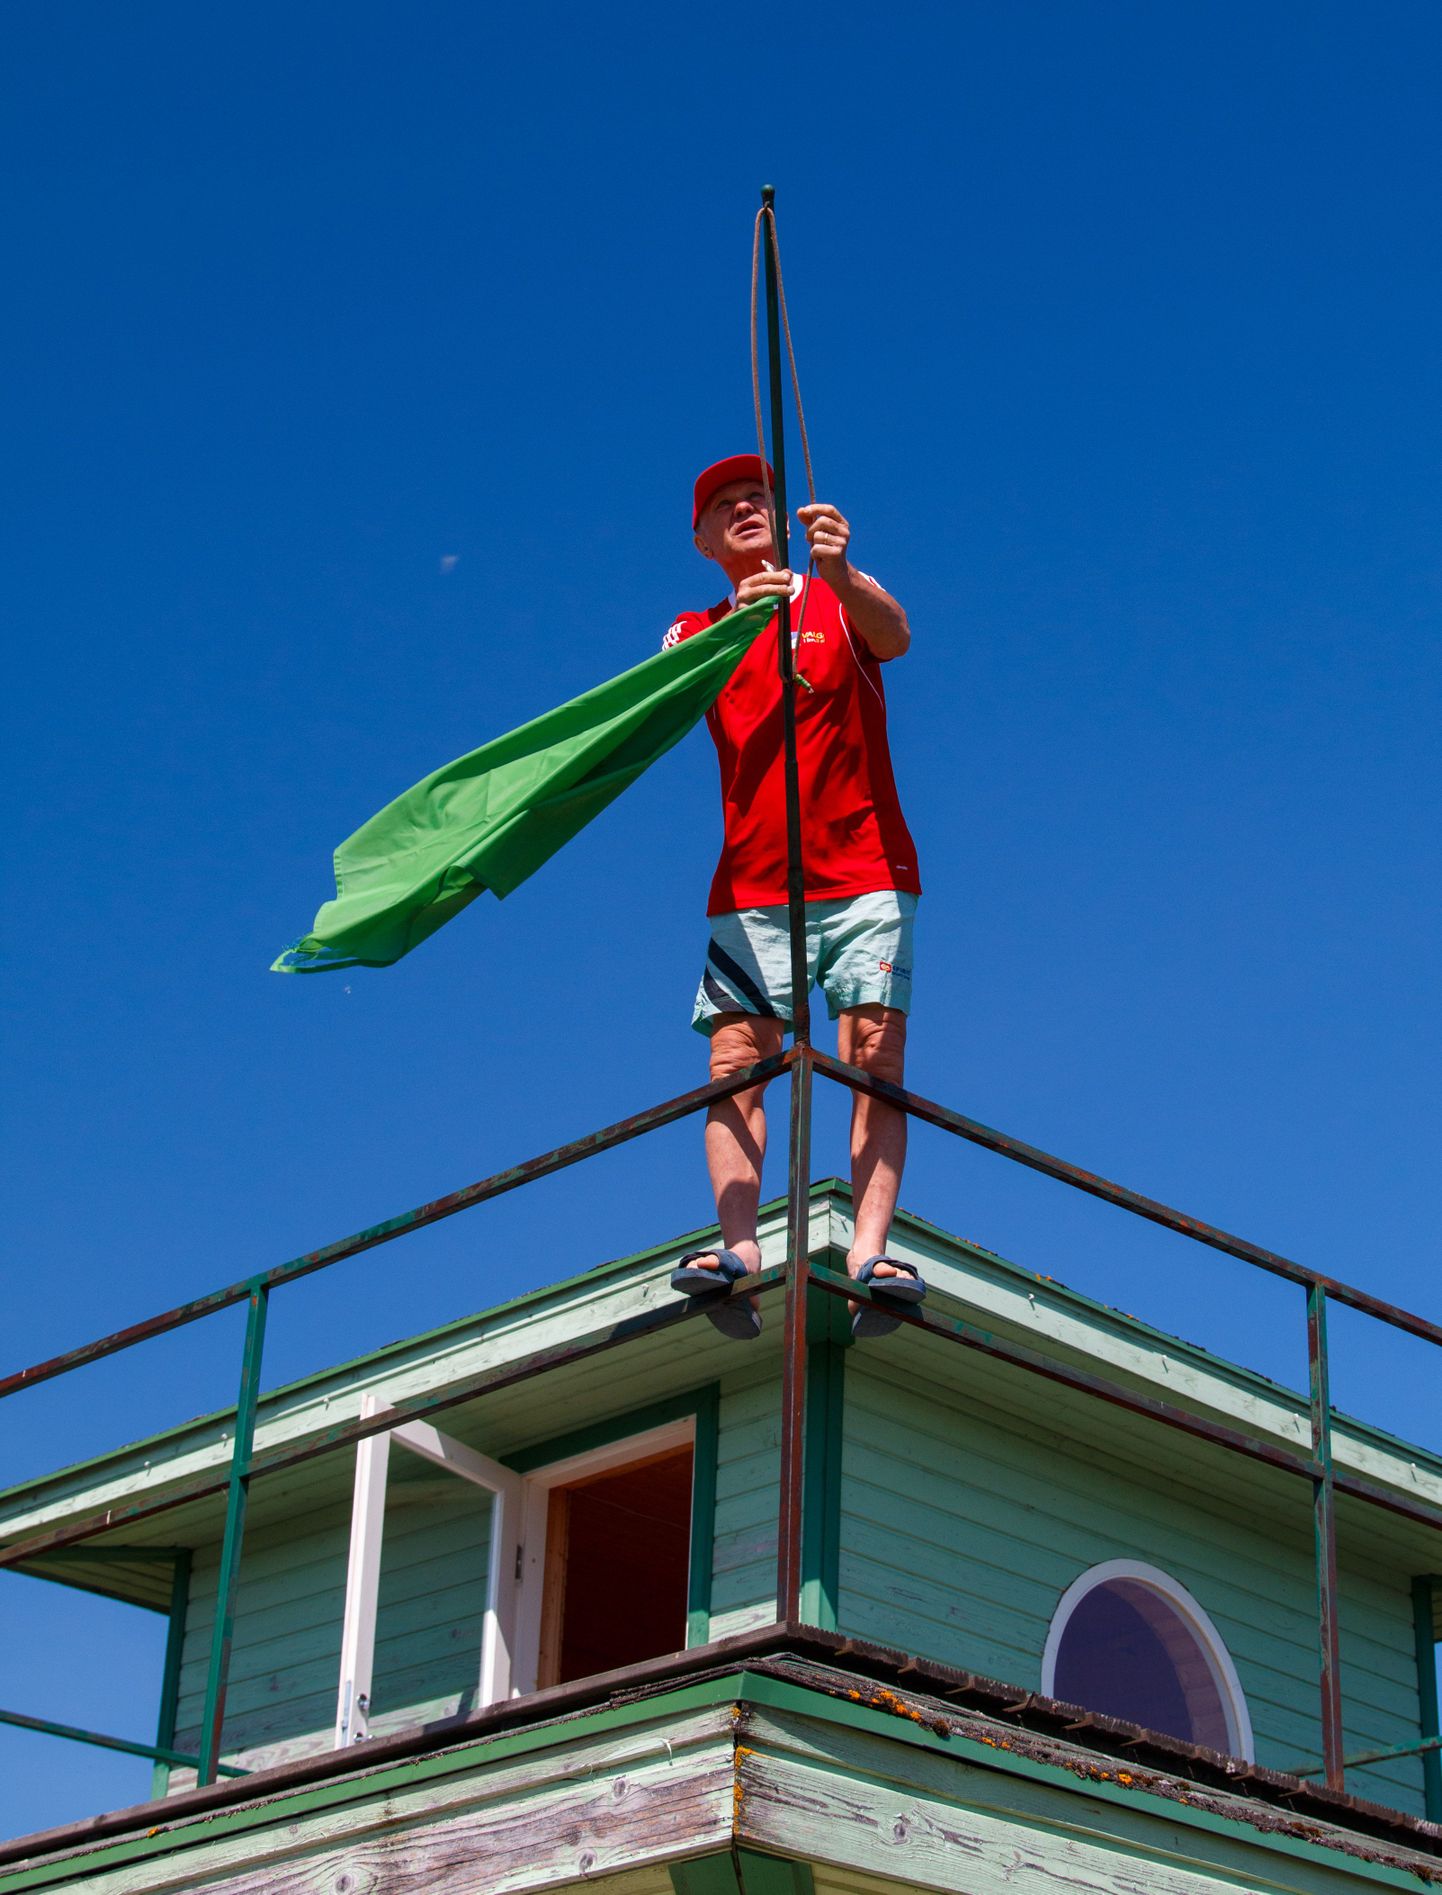 Pedeli rannamaja juures alustati kolmapäeval rannahooaega rõõmusõnumiga. Kogenud rannavalvur Enn Meriroos sai pärast temperatuuri mõõtmist lehvima panna rohelise lipu.